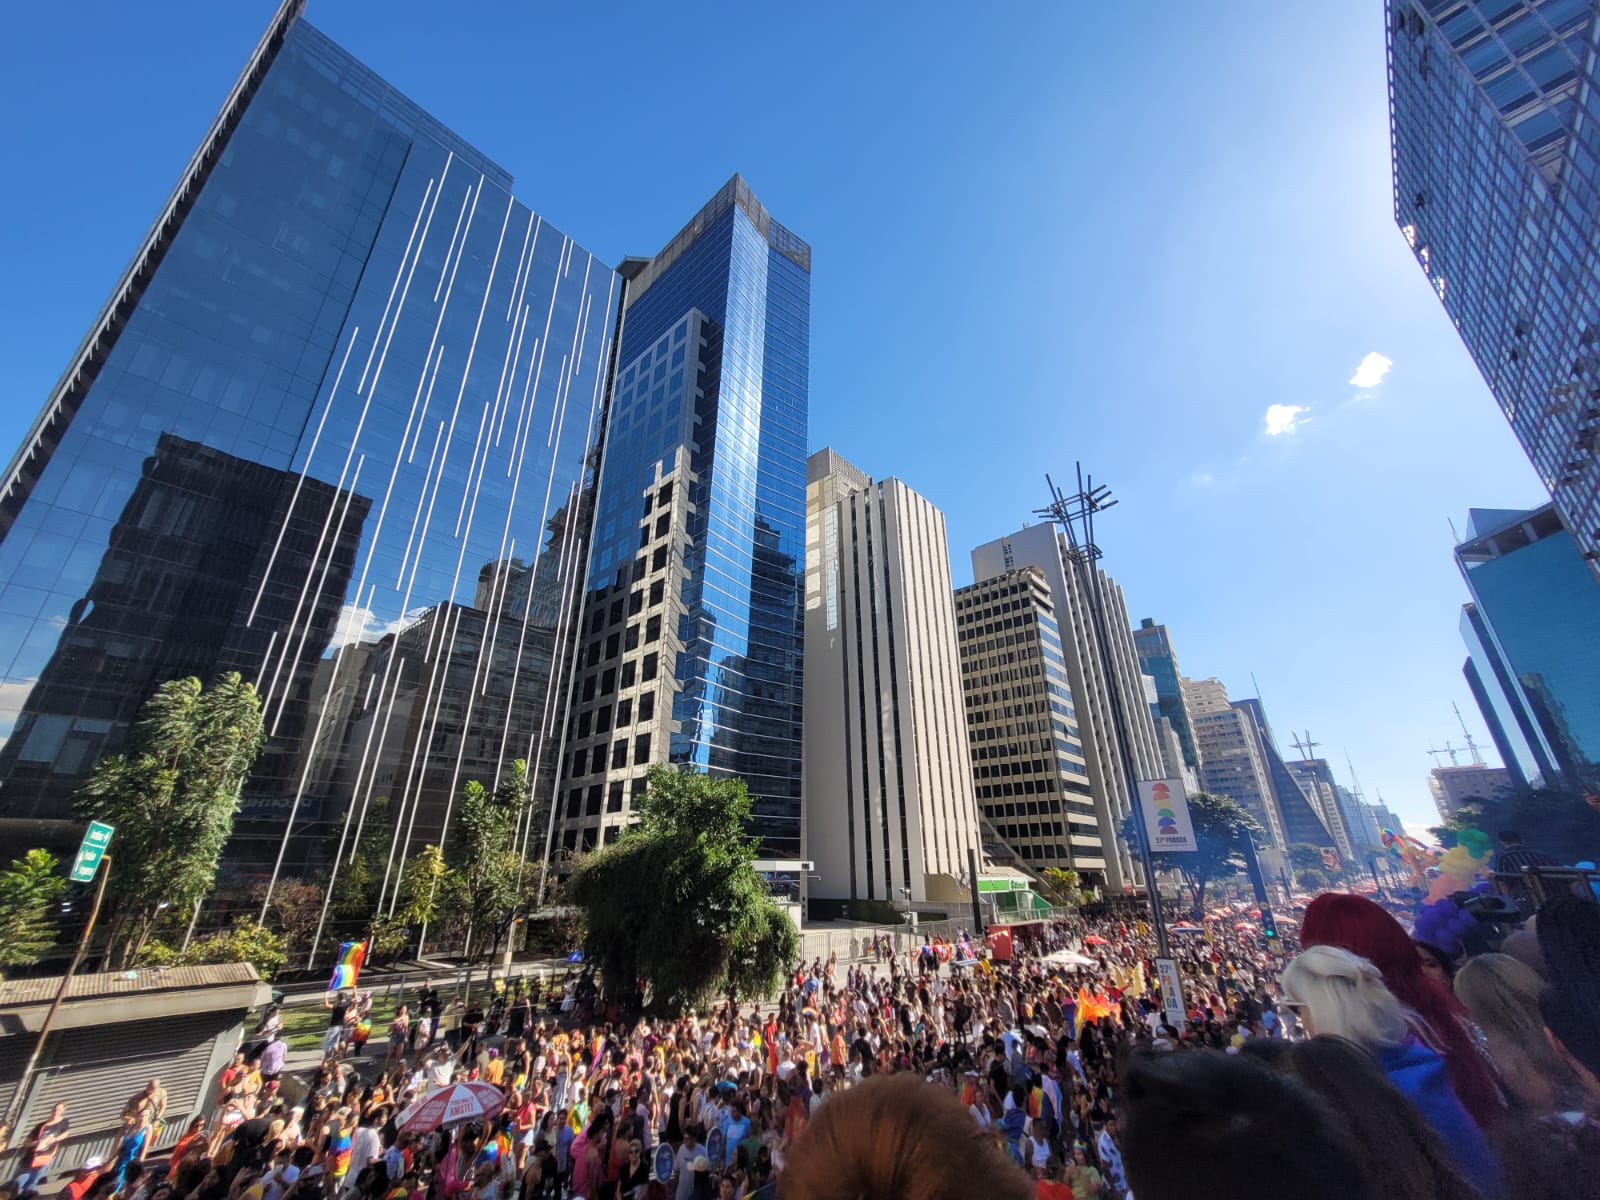 O calor faz a alegria dos participantes da Parada do Orgulho, em São Paulo